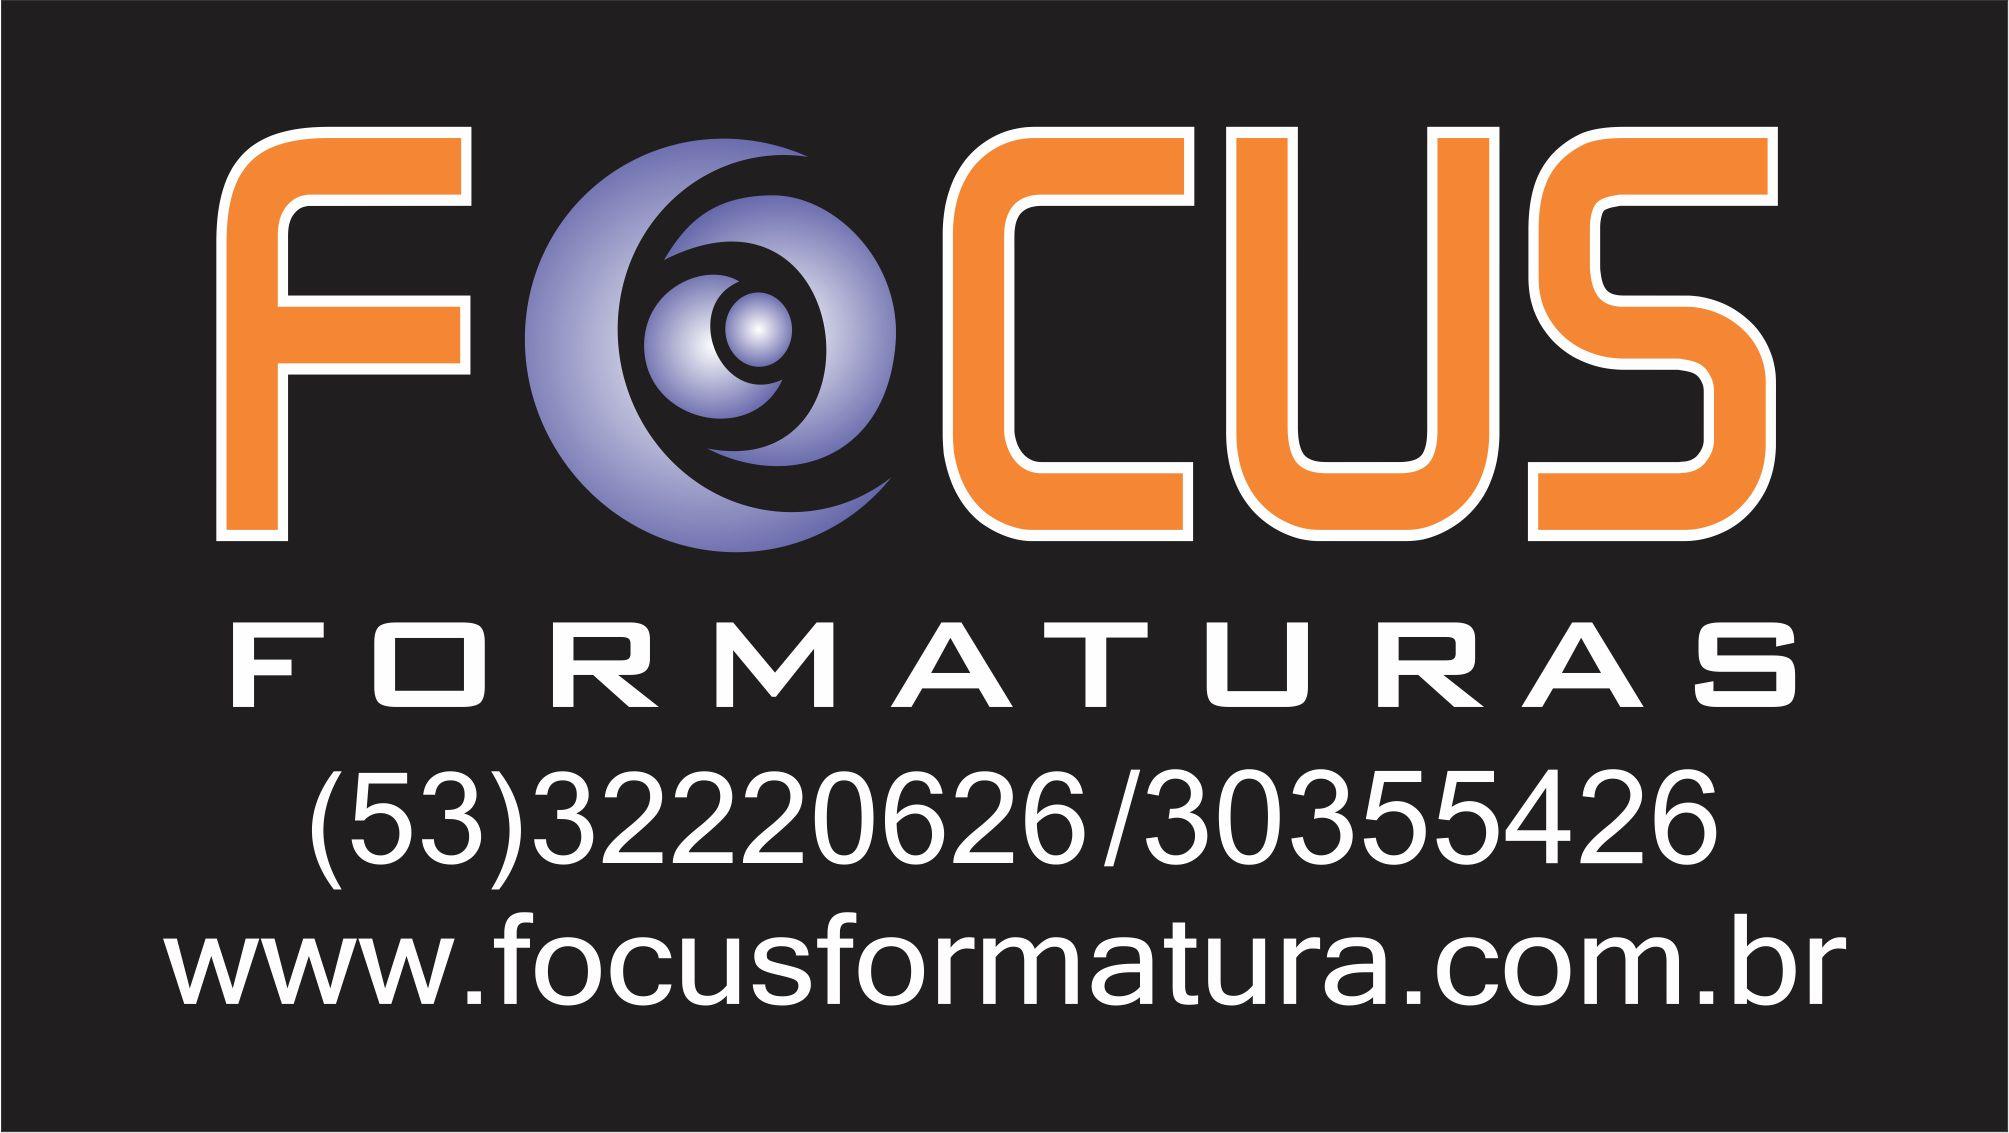 Focus Formatura e Estúdio